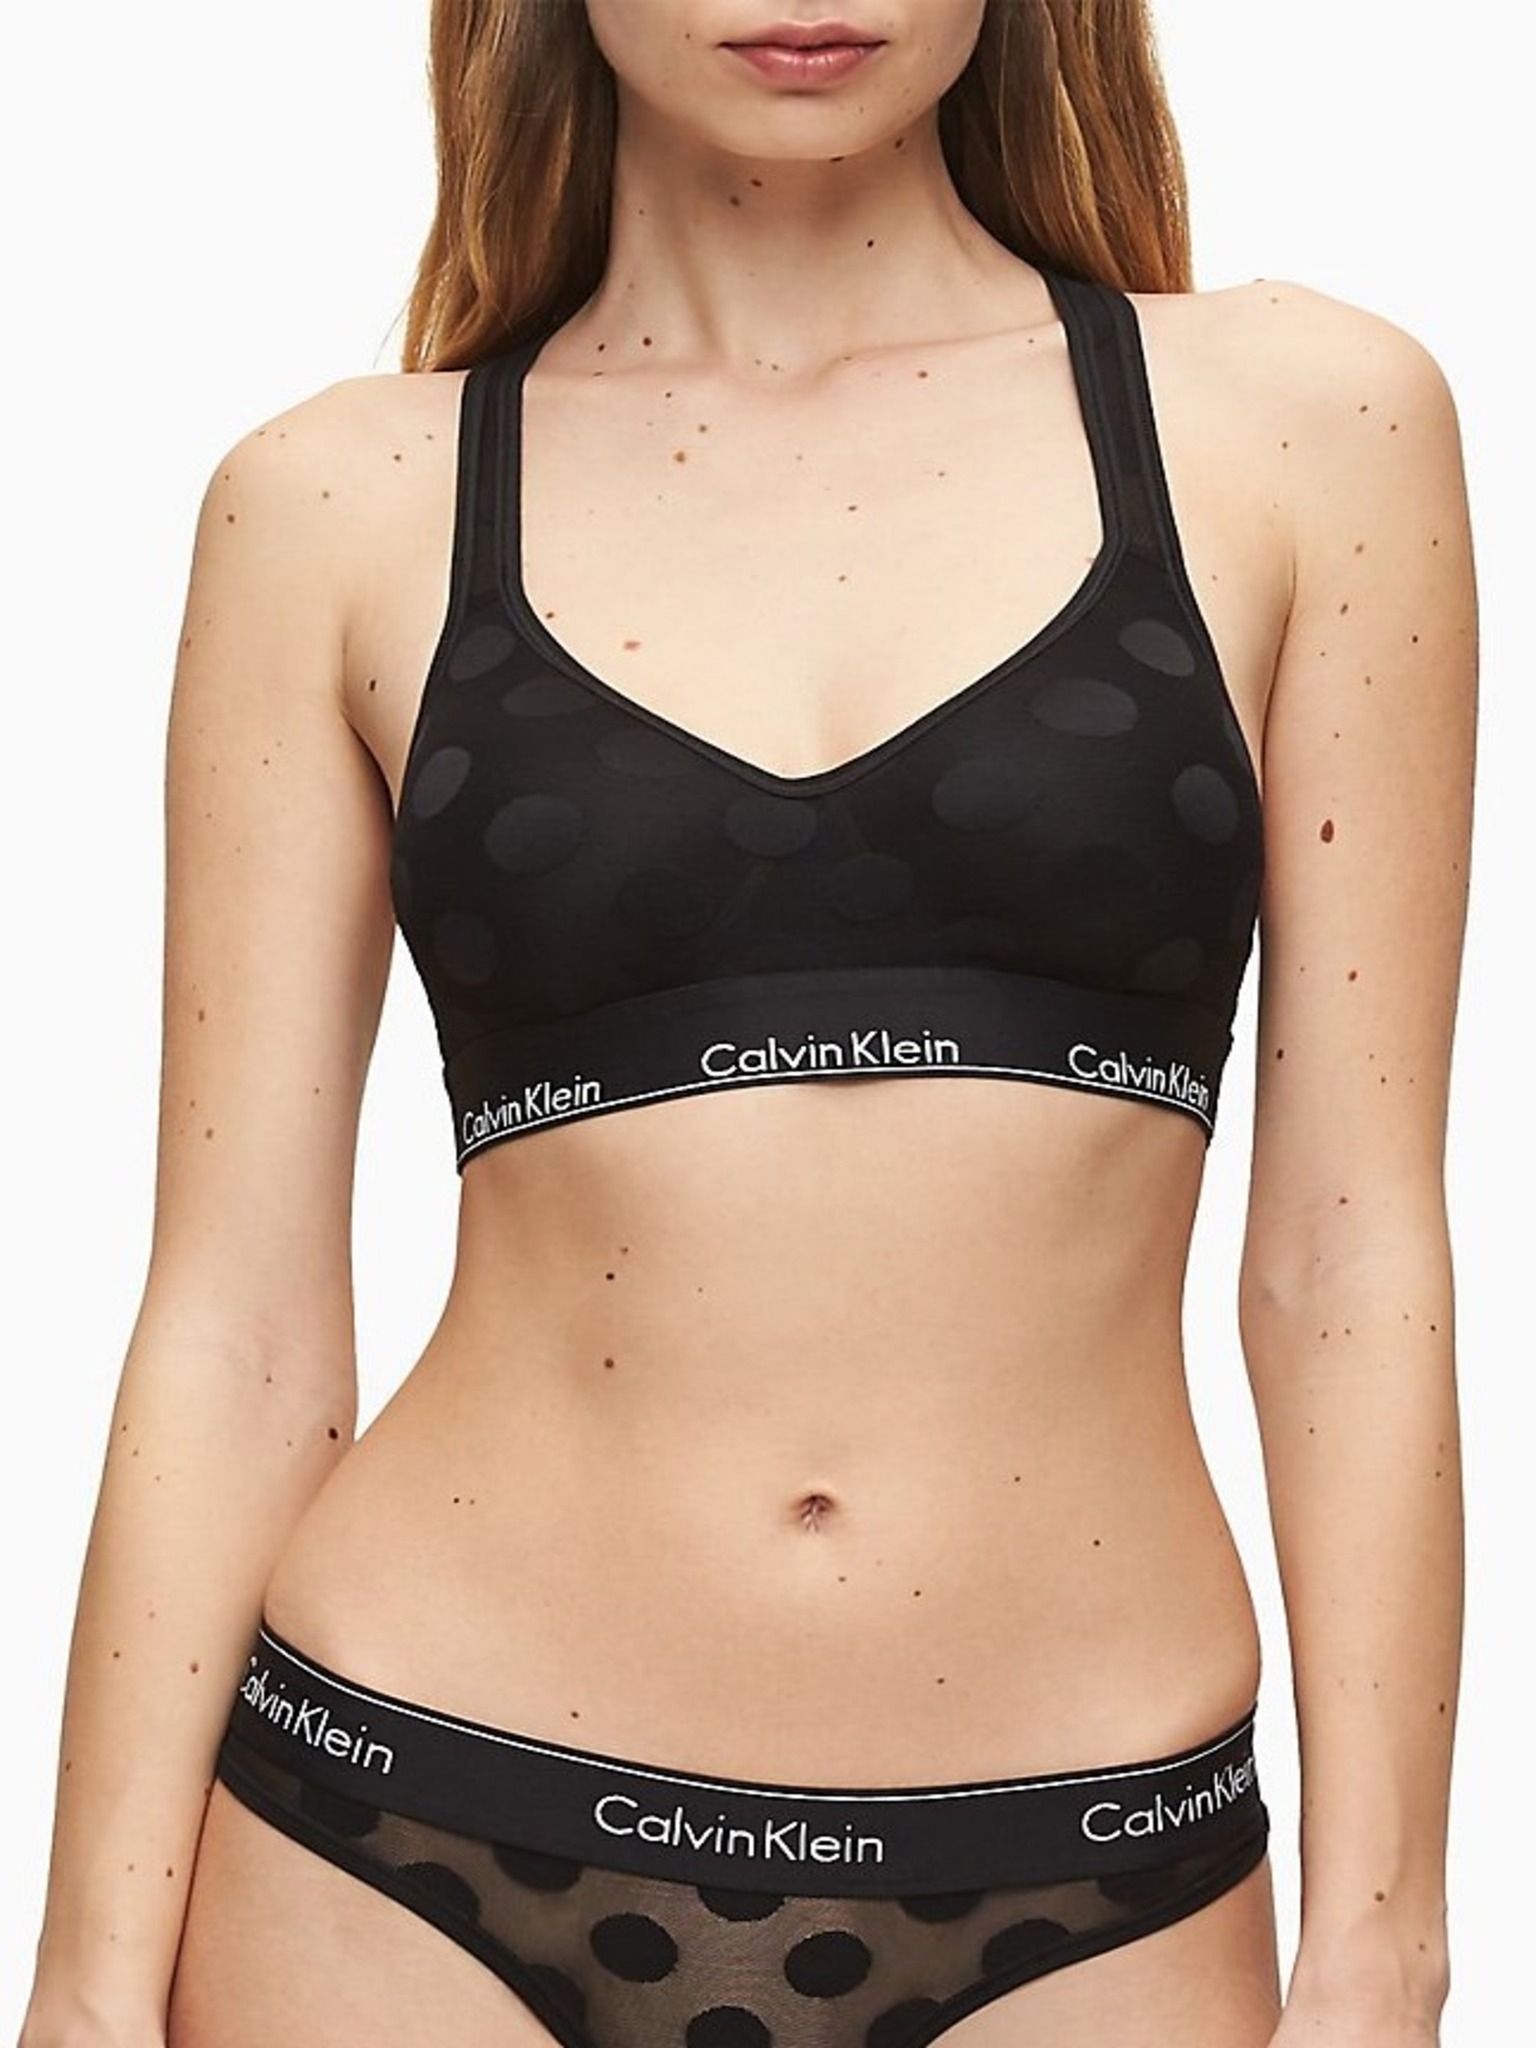 Calvin Klein Lined Bras for Women